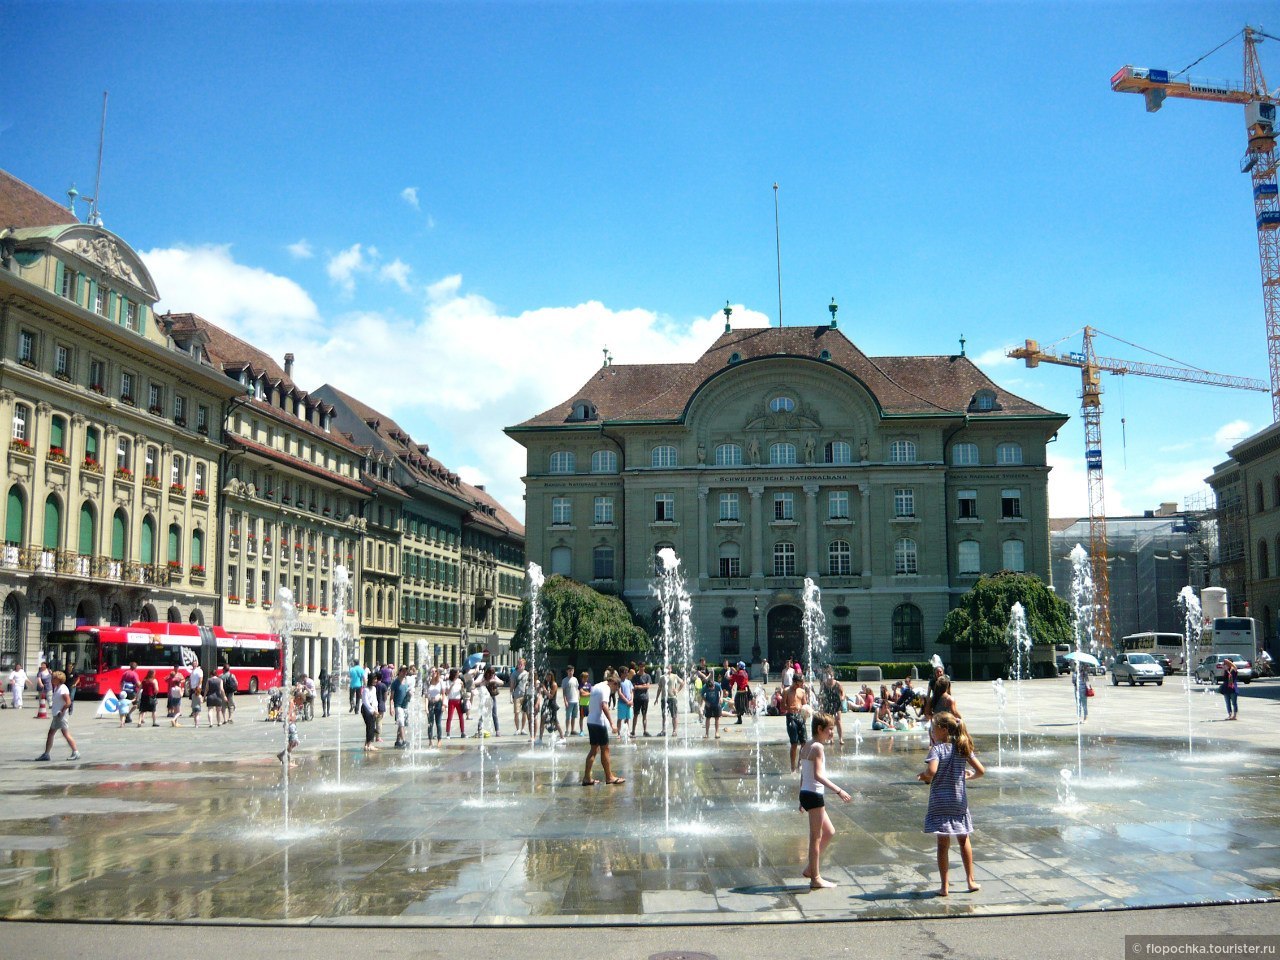 Столица фактически. Площадь Бундесплац Берн. Столица Швейцарии Берн вокзал. Берн Швейцария Центральная площадь. Фонтан Гельвеция Берн.